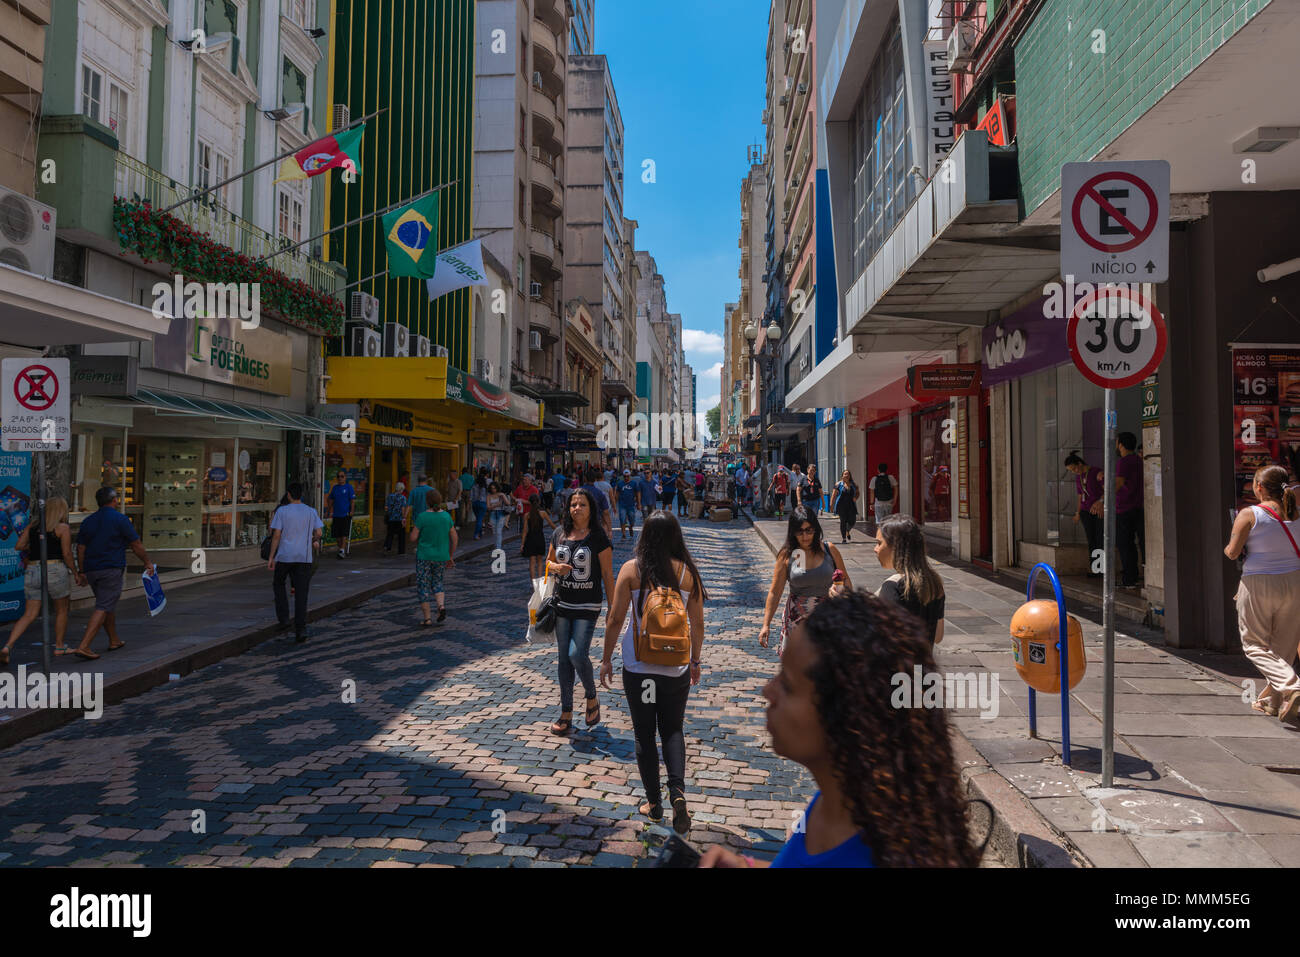 Das tägliche Leben im hektischen Stadtzentrum, Porto Alegre, Rio Grande do Sul, Brasilien, Lateinamerika Stockfoto